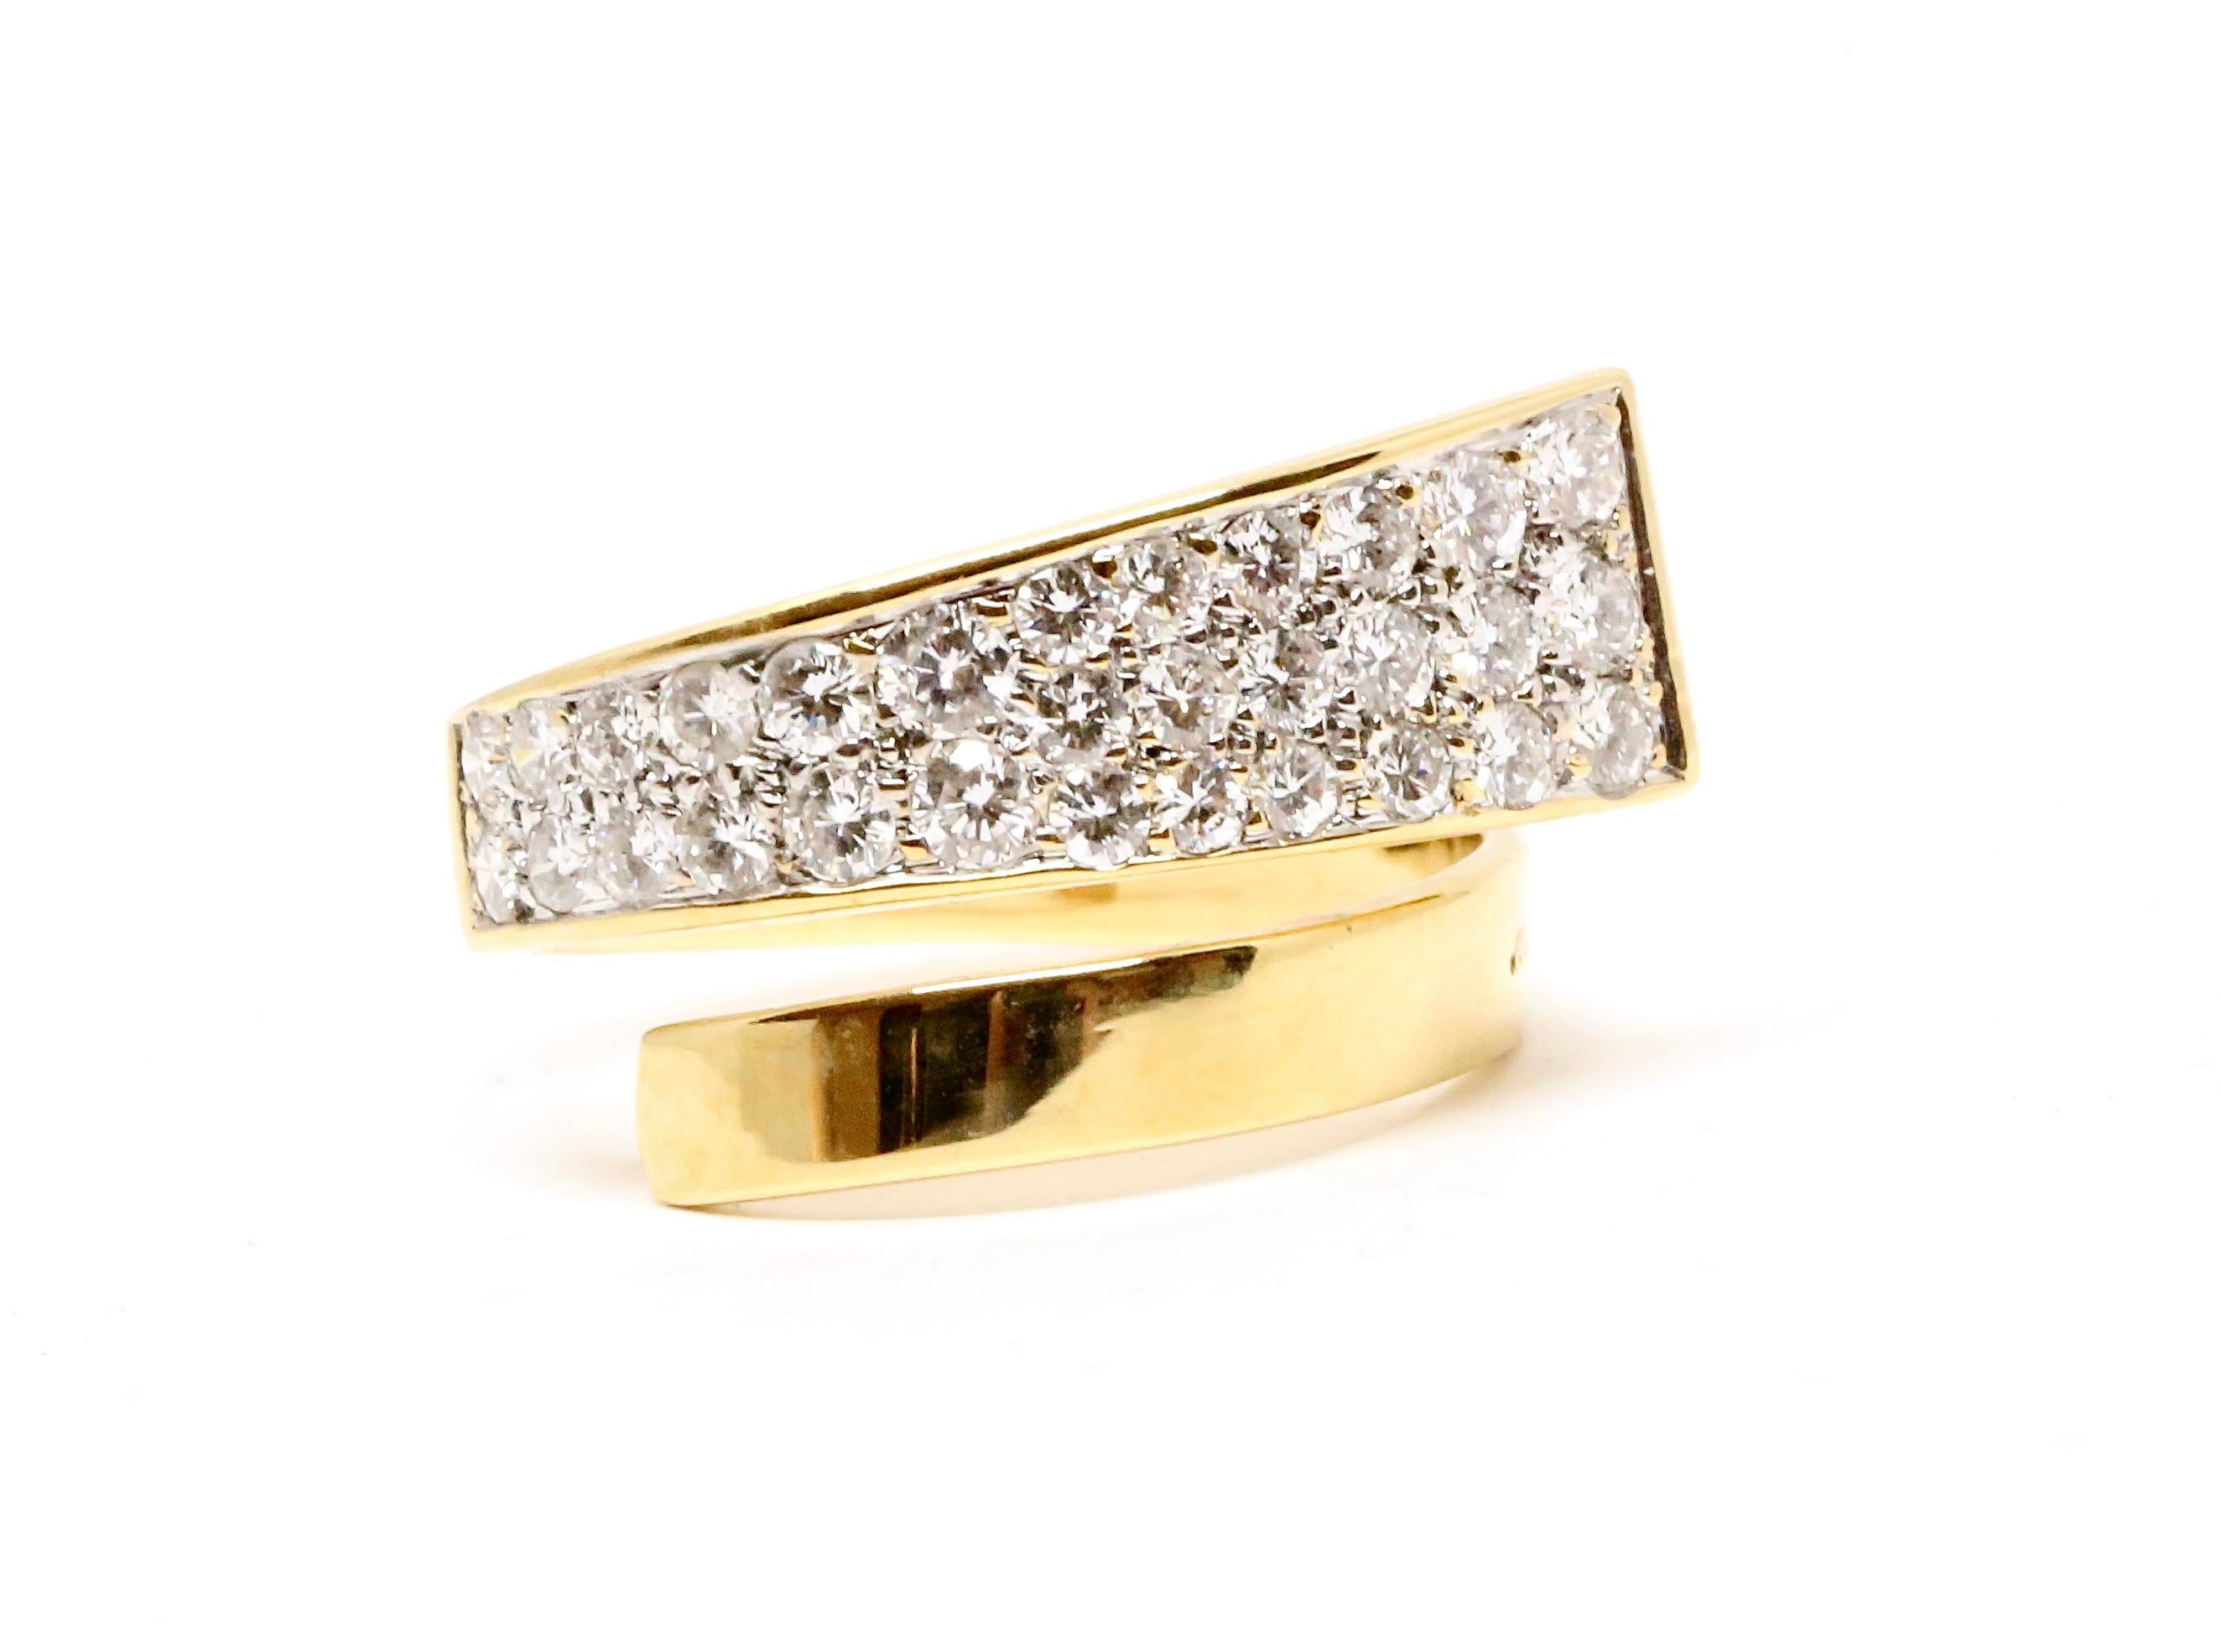 Très inhabituelle, bague enveloppante moderniste en or jaune 18 carats avec diamants, conçue par Jean Dinh Van pour Cartier et datant de la fin des années 1960. La bague est à la fois très délicate et audacieuse. Il s'enroule autour du doigt. La